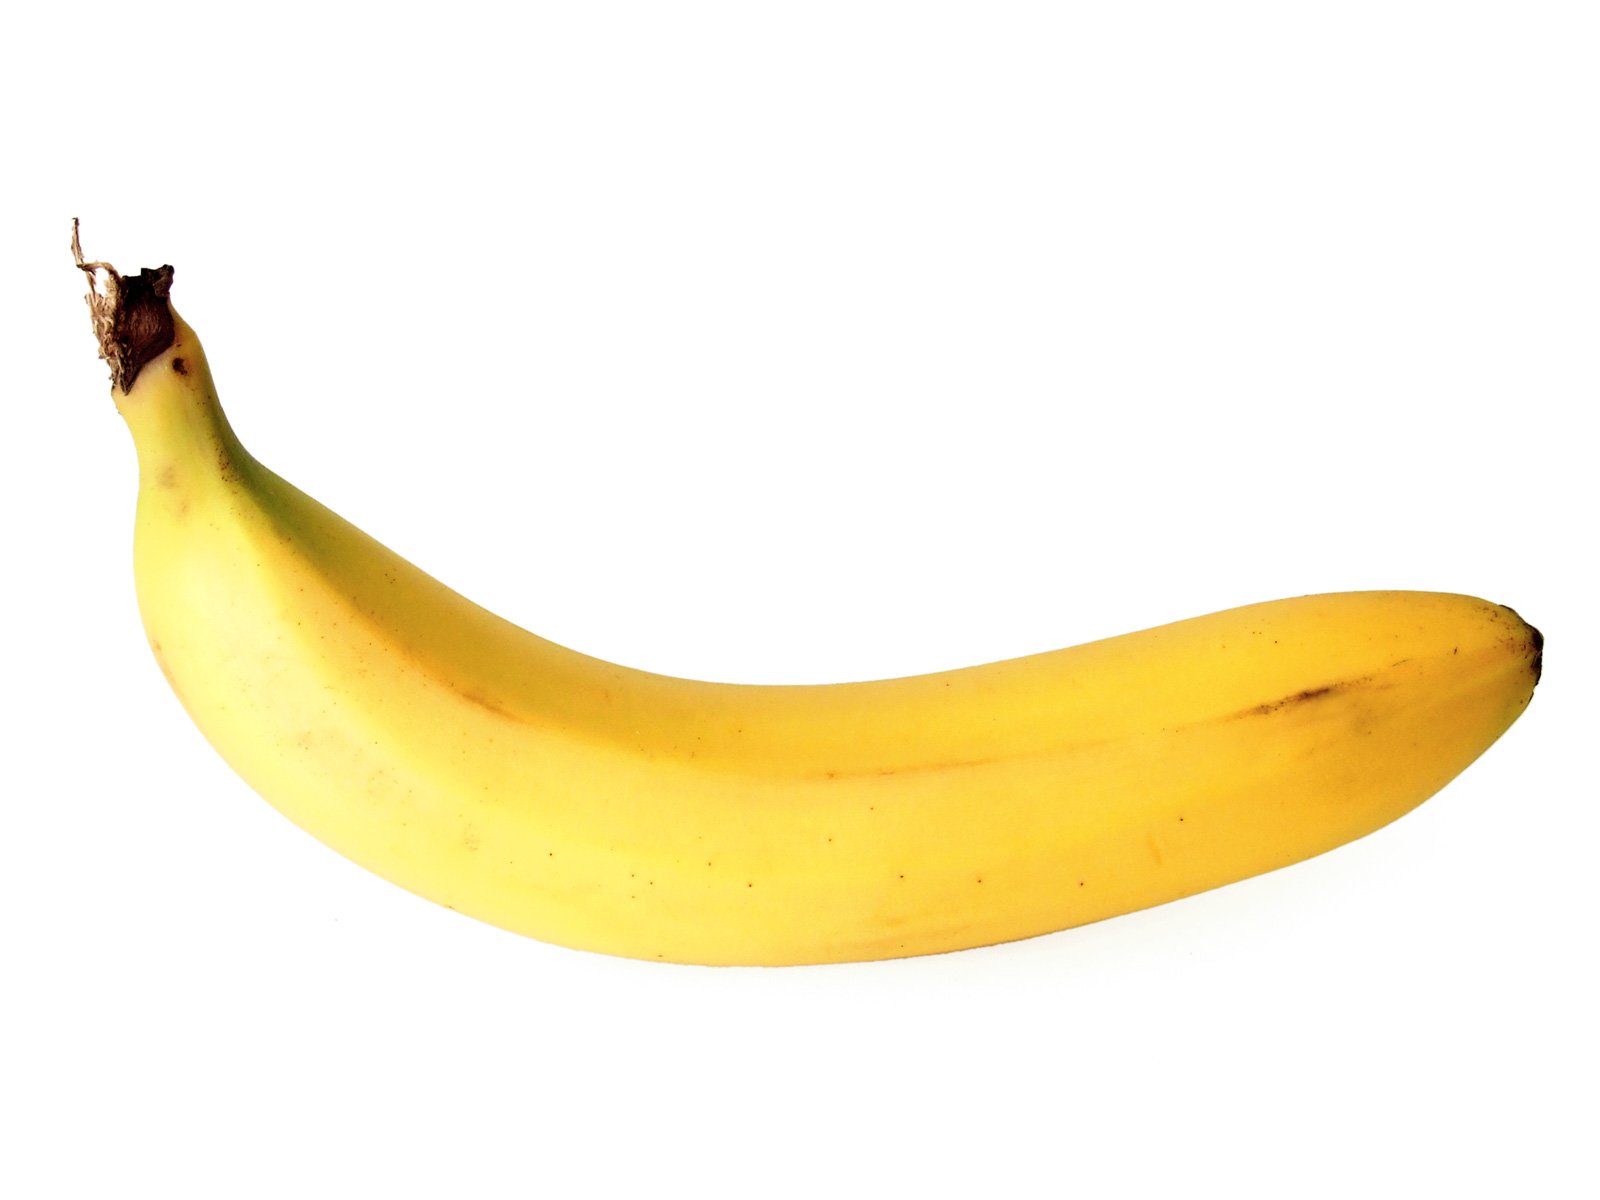 Бананы фото на прозрачном фоне